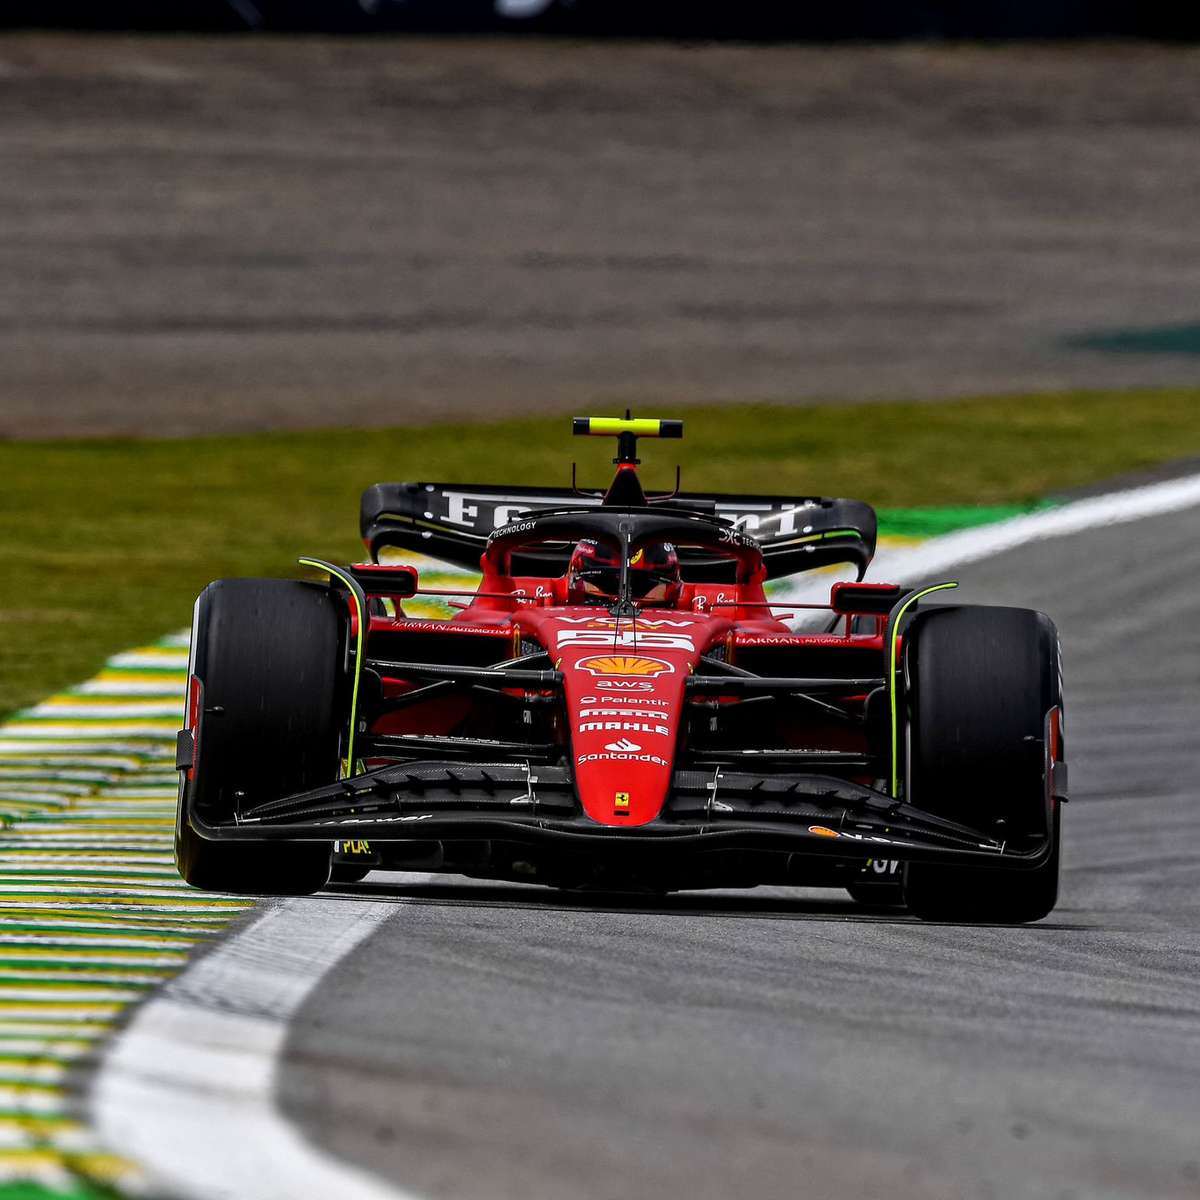 Sainz lidera treino livre da F1 em Interlagos. Verstappen é só 16º